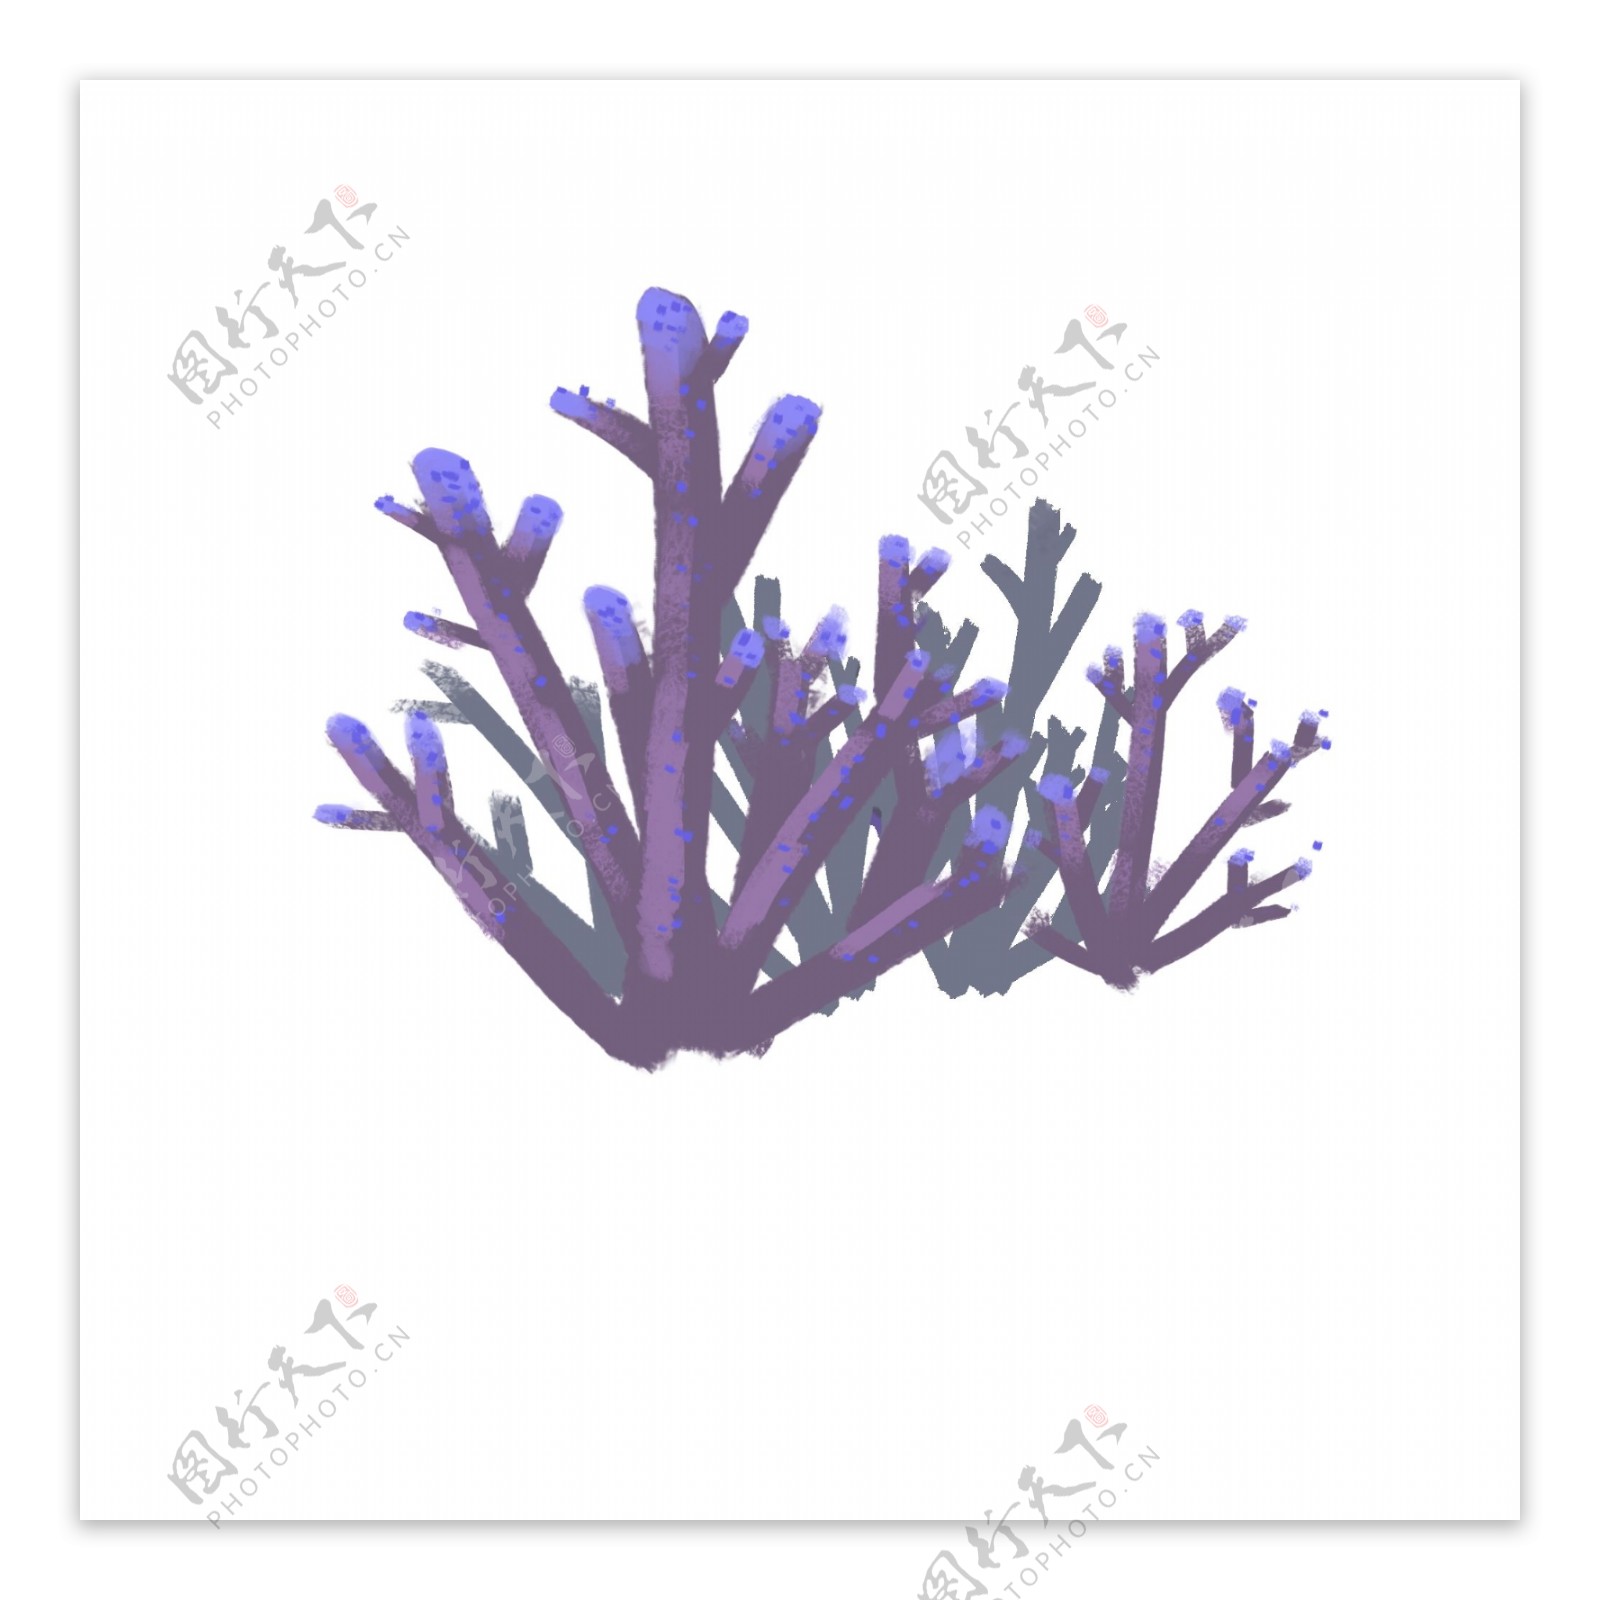 一组紫色珊瑚